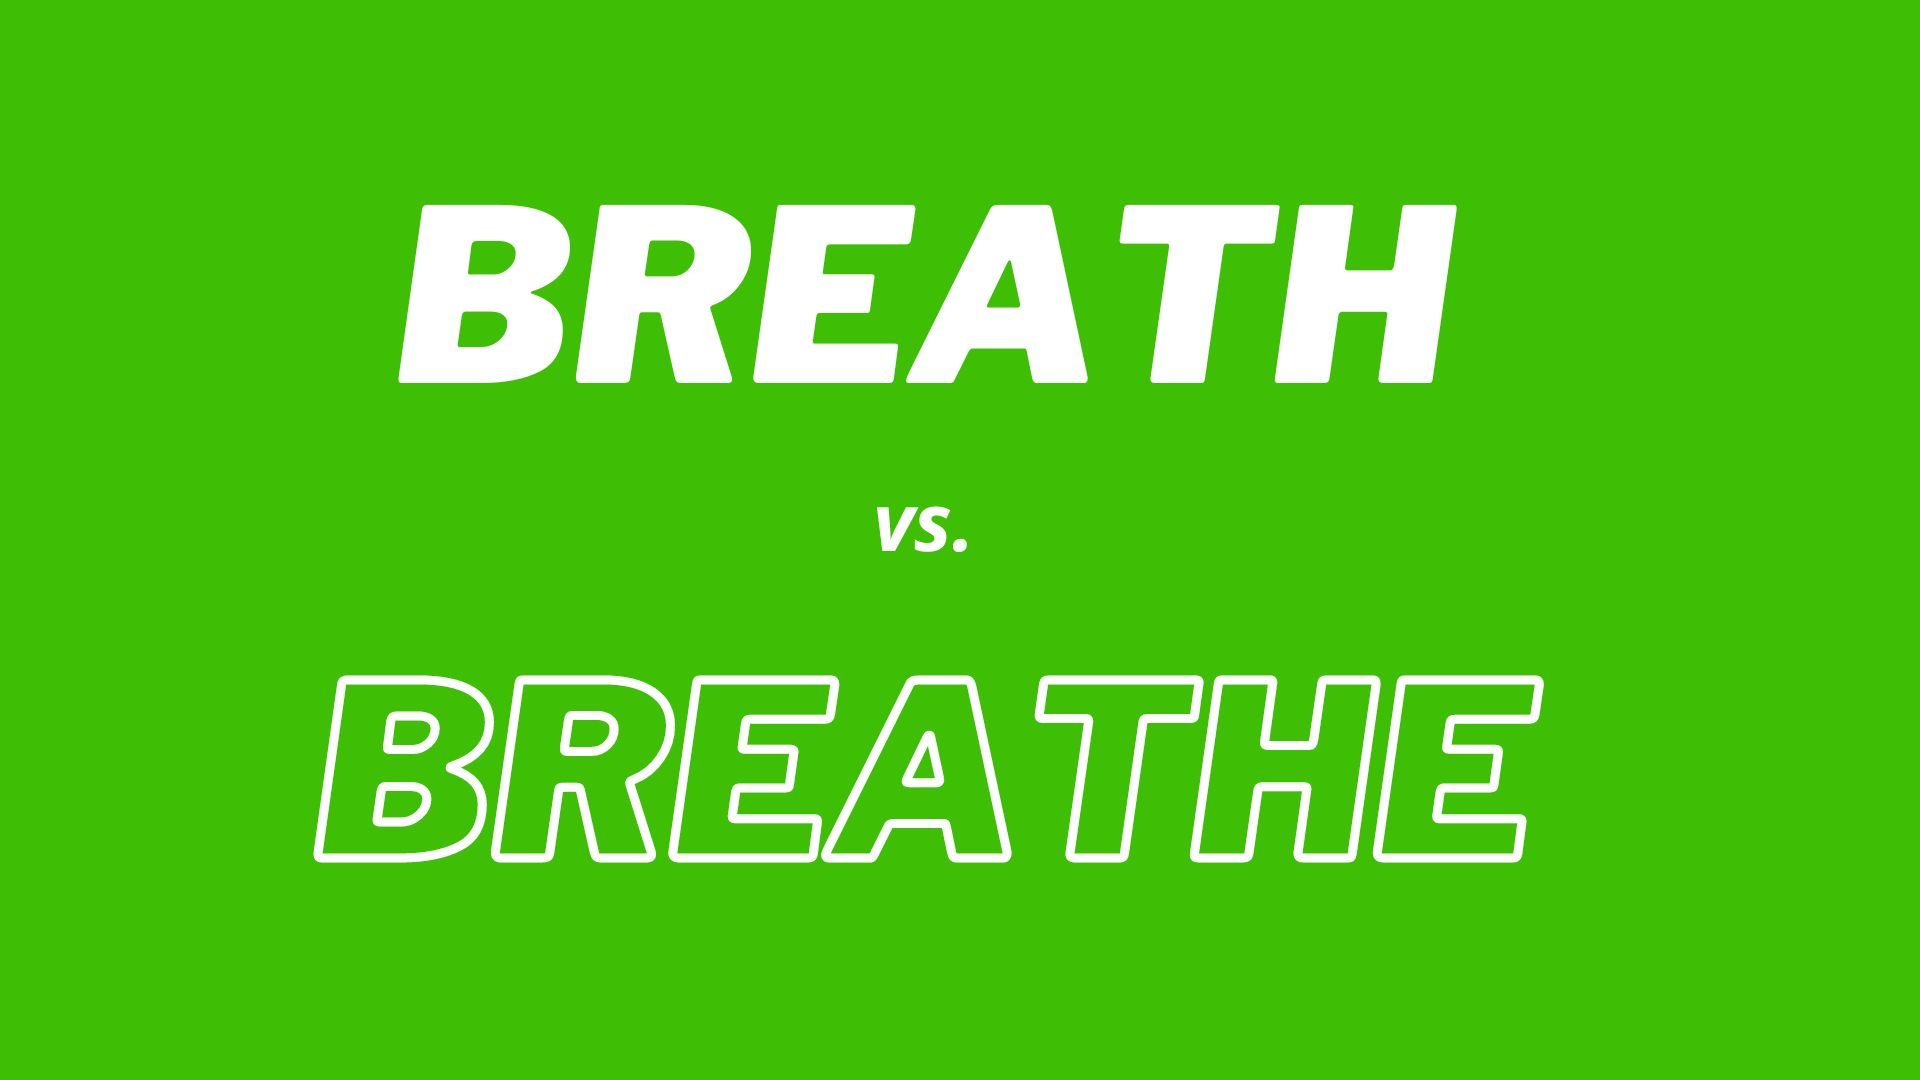 Wizualne porównanie i definicje słów "Breath" i "Breathe".